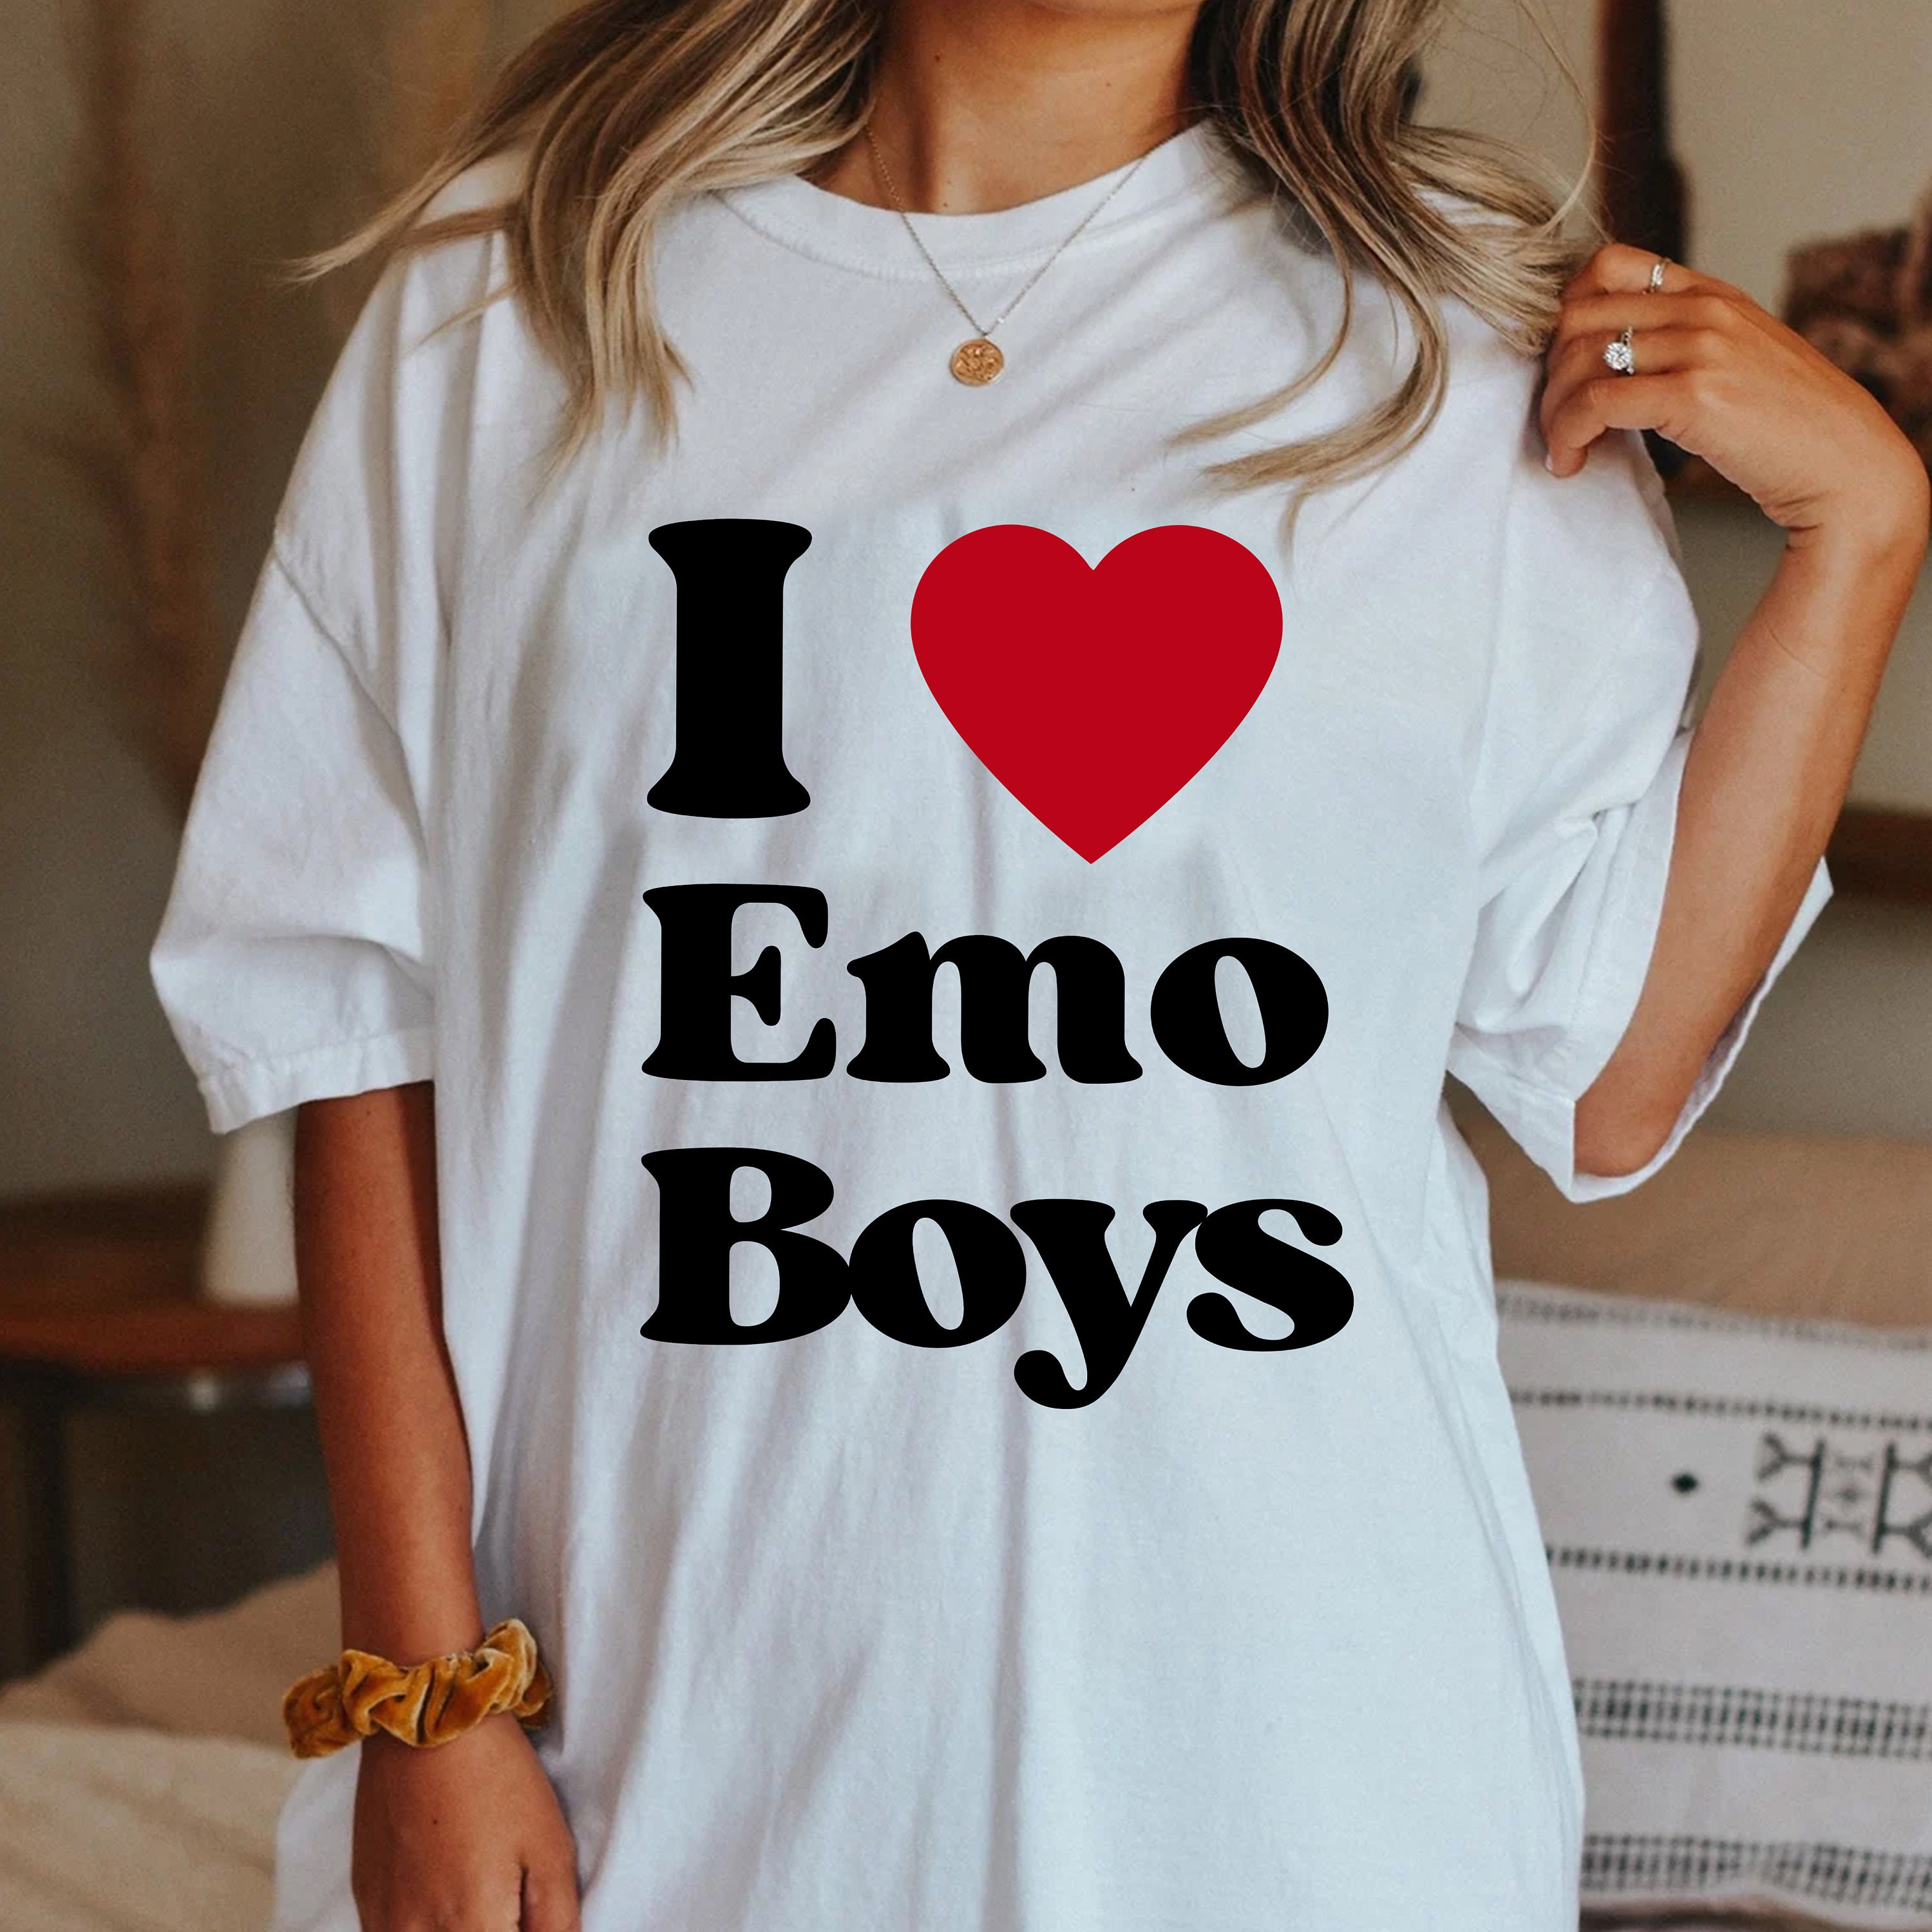 The emo tshirt, Emo tshirts, Cute black shirts, Roblox